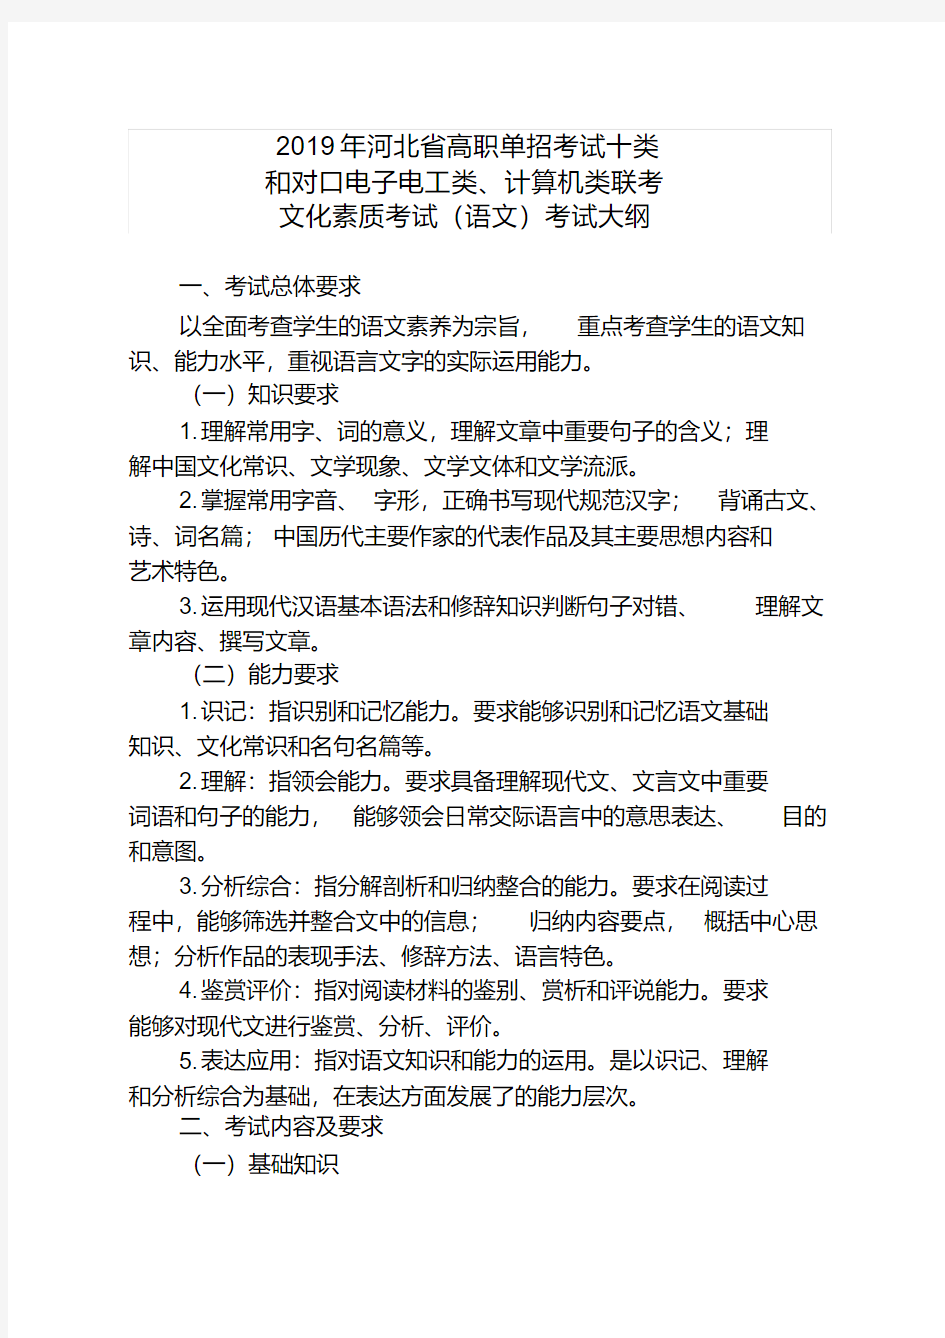 2019年河北省高职单招考试十类